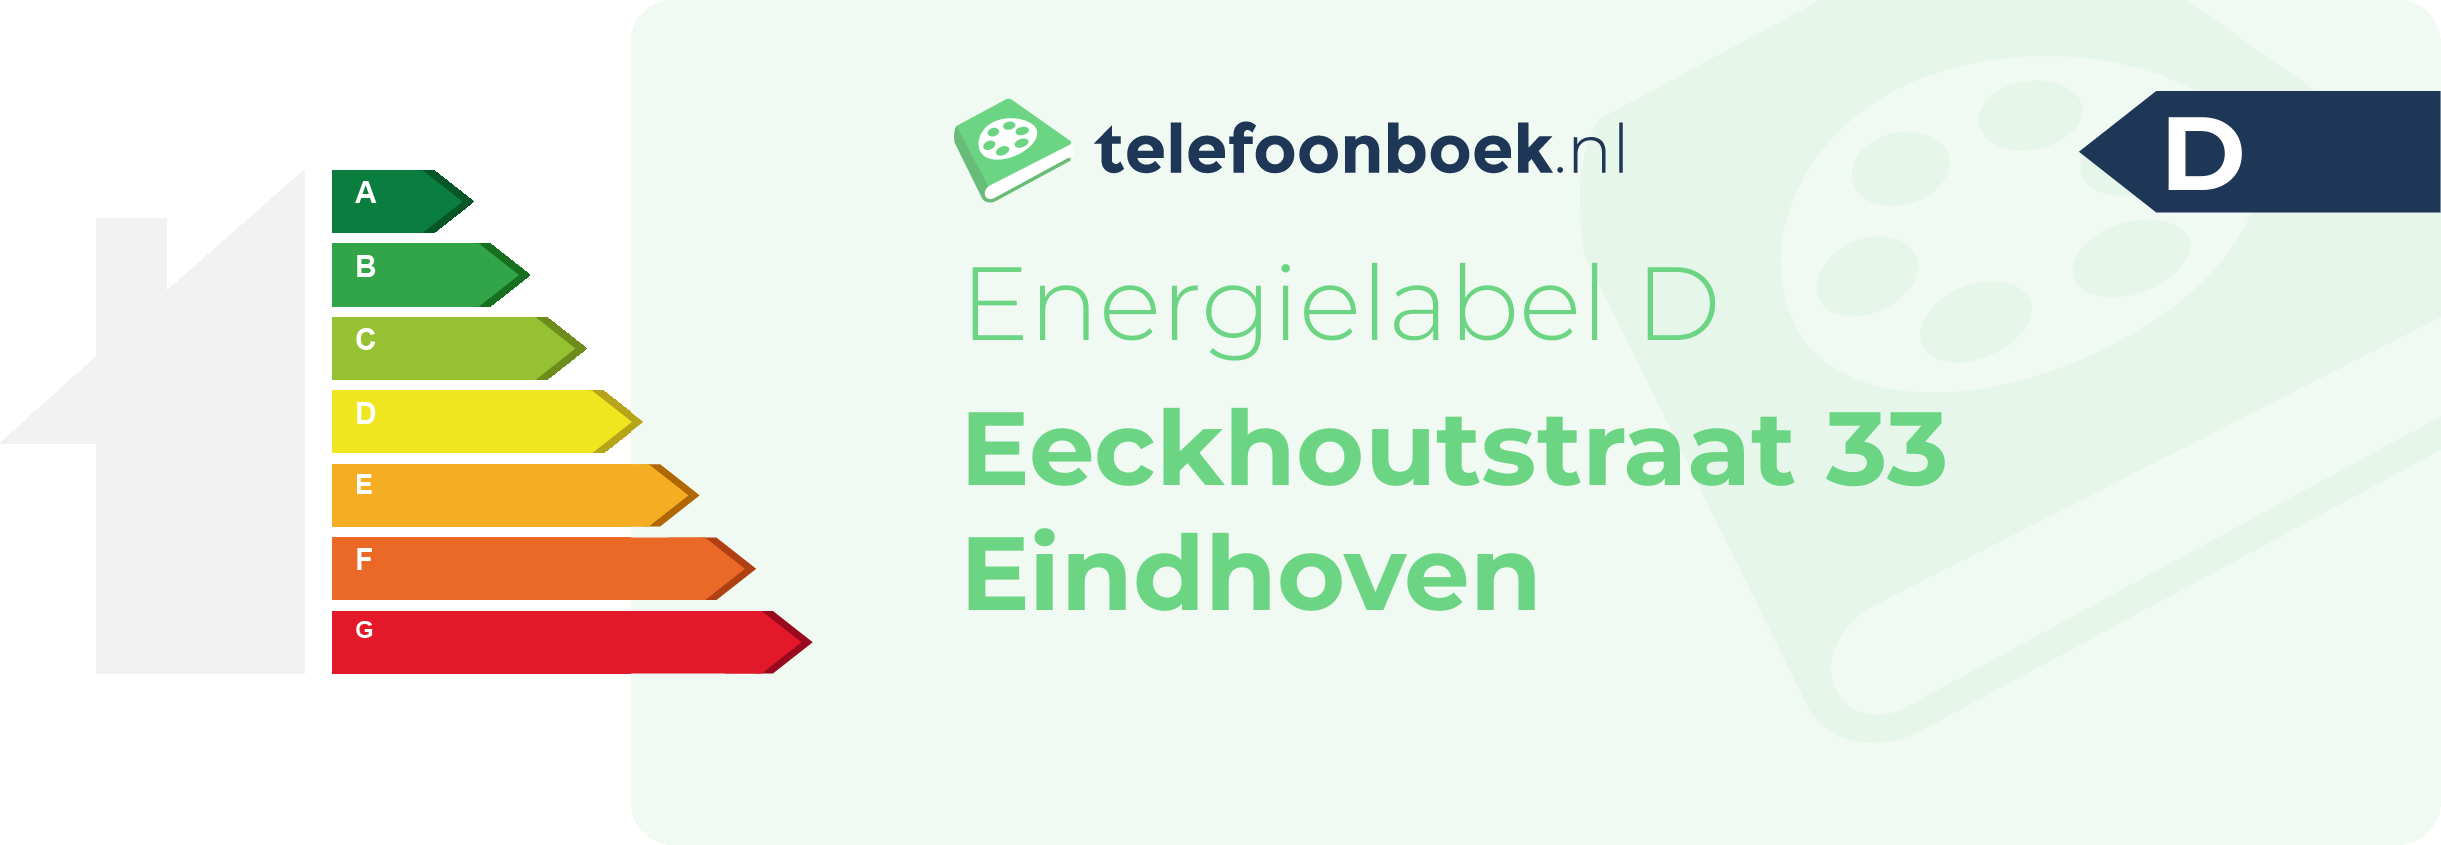 Energielabel Eeckhoutstraat 33 Eindhoven